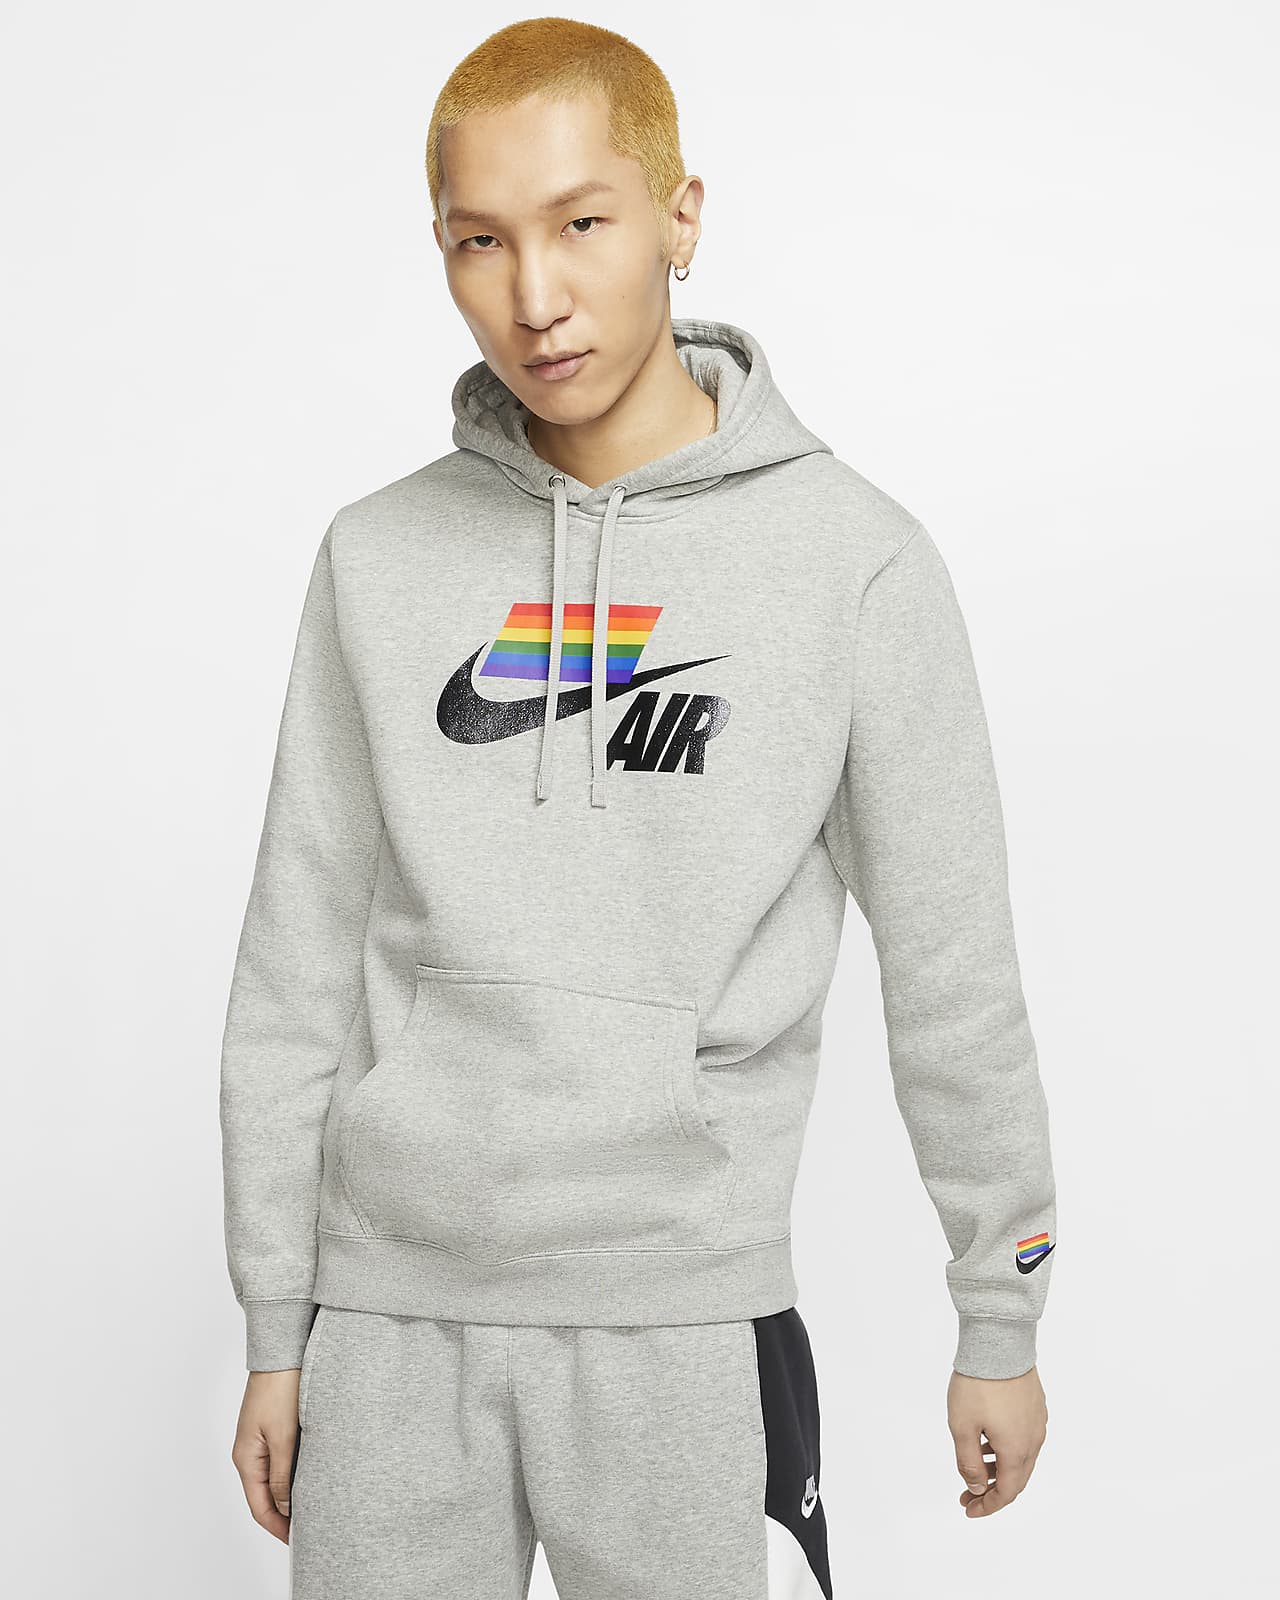 rainbow nike hoodie